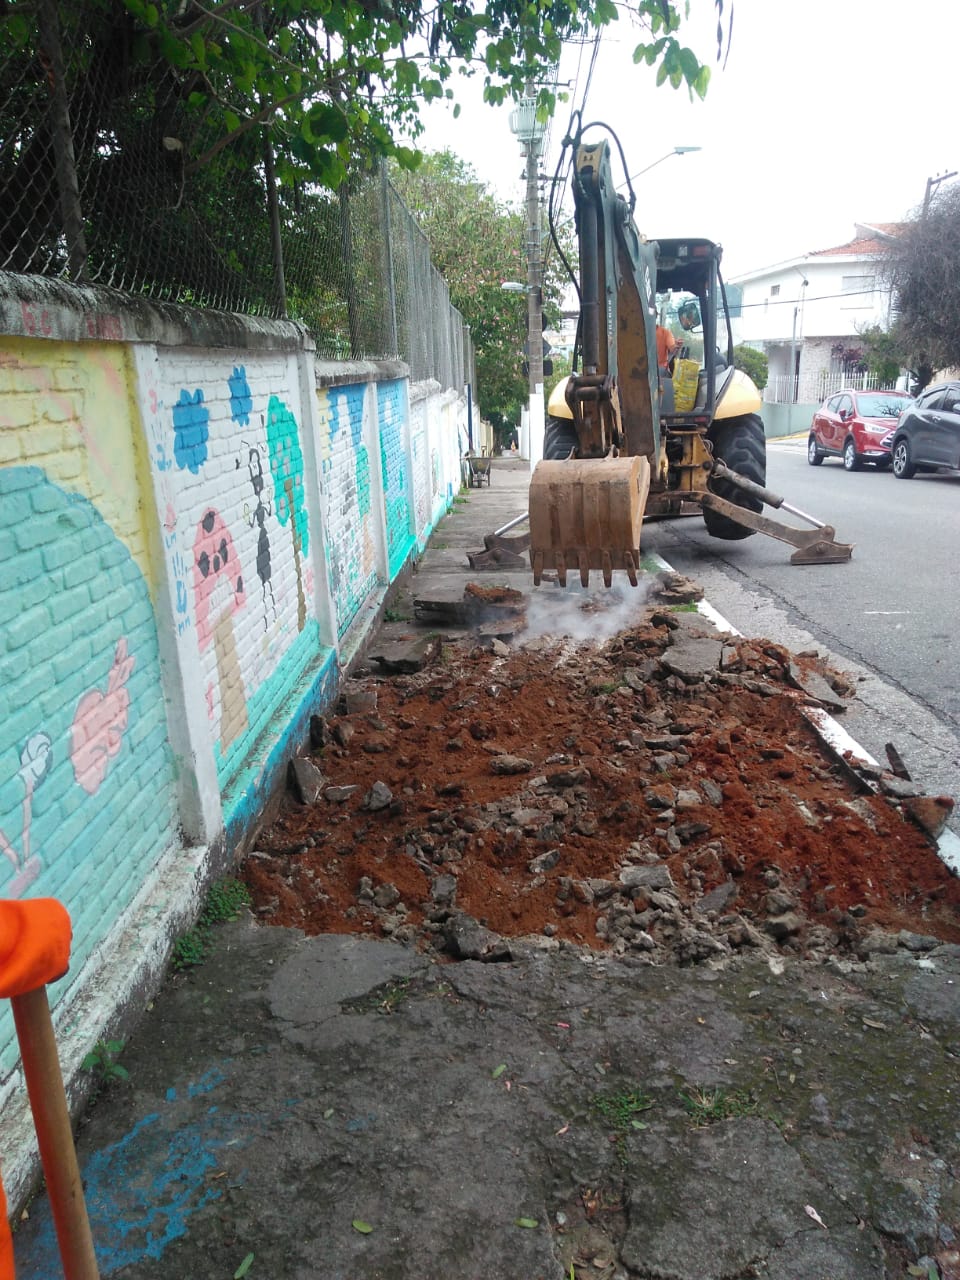 #PraCegoVer - Uma escavadeira quebra o passeio que será reformado. Ao lado, há um muro. E carros ao fundo.